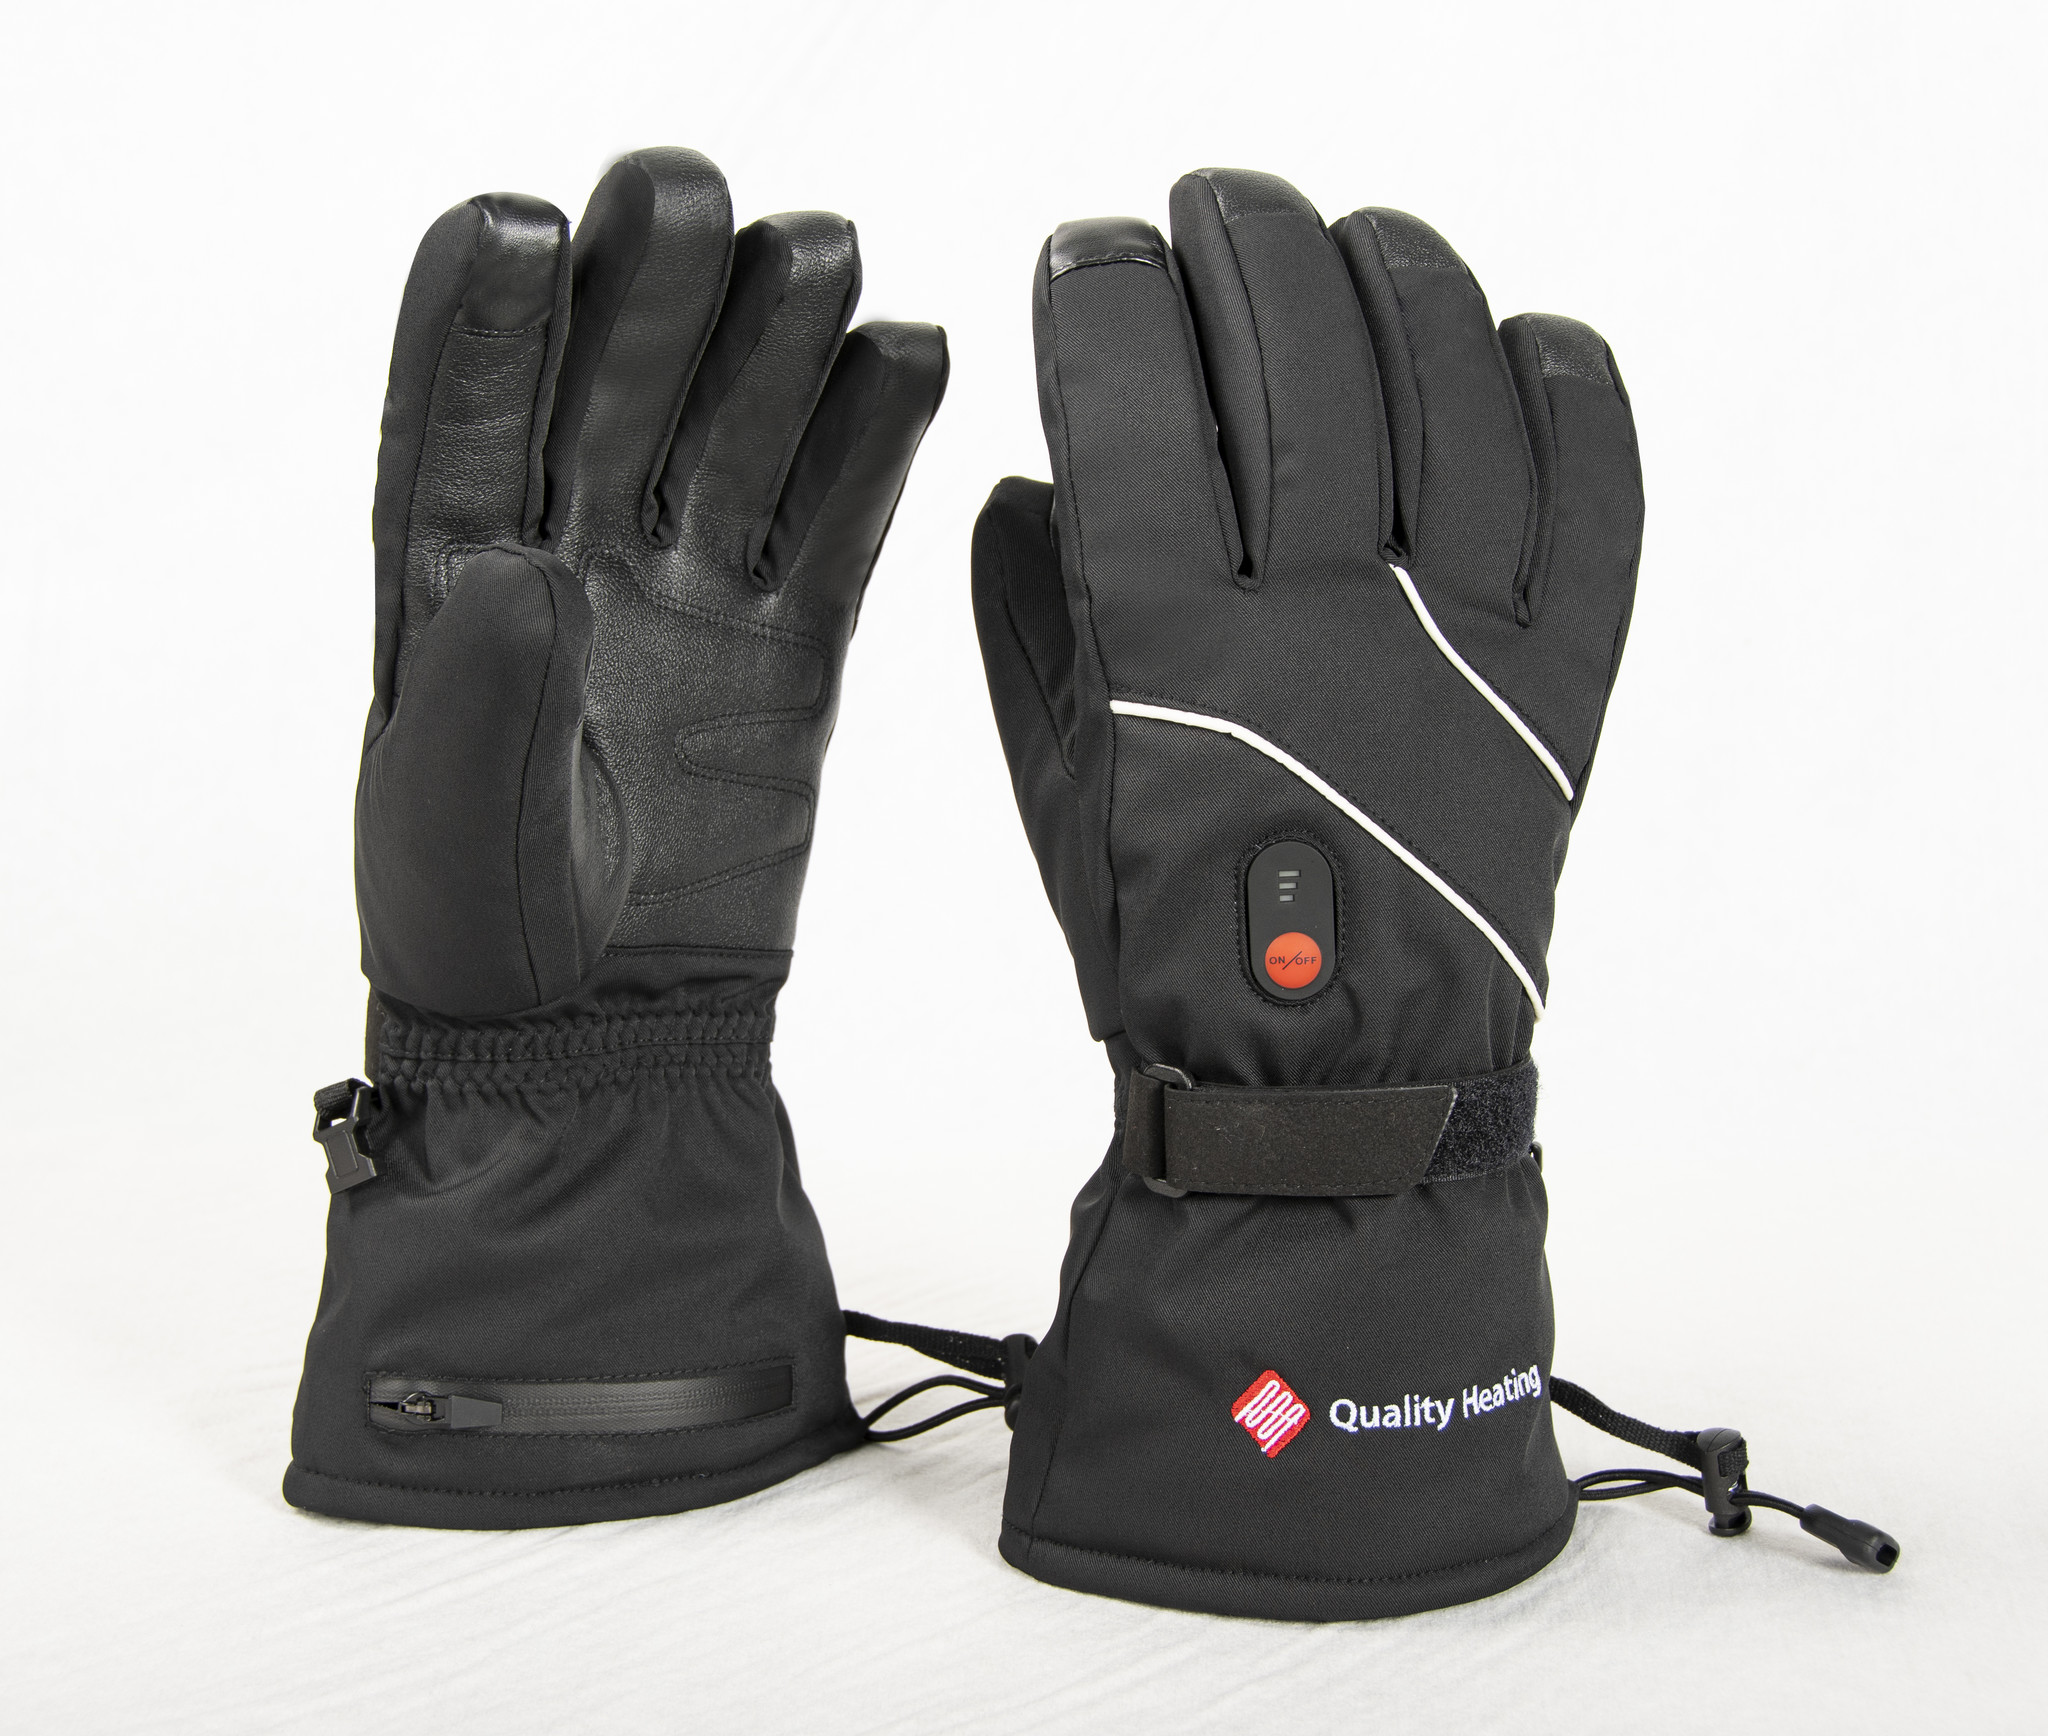 ik ontbijt Naar de waarheid Misbruik Verwarmde leren handschoenen 3 warmtestanden - Infraroodverwarming kopen? |  Quality Heating Laagste prijsgarantie!